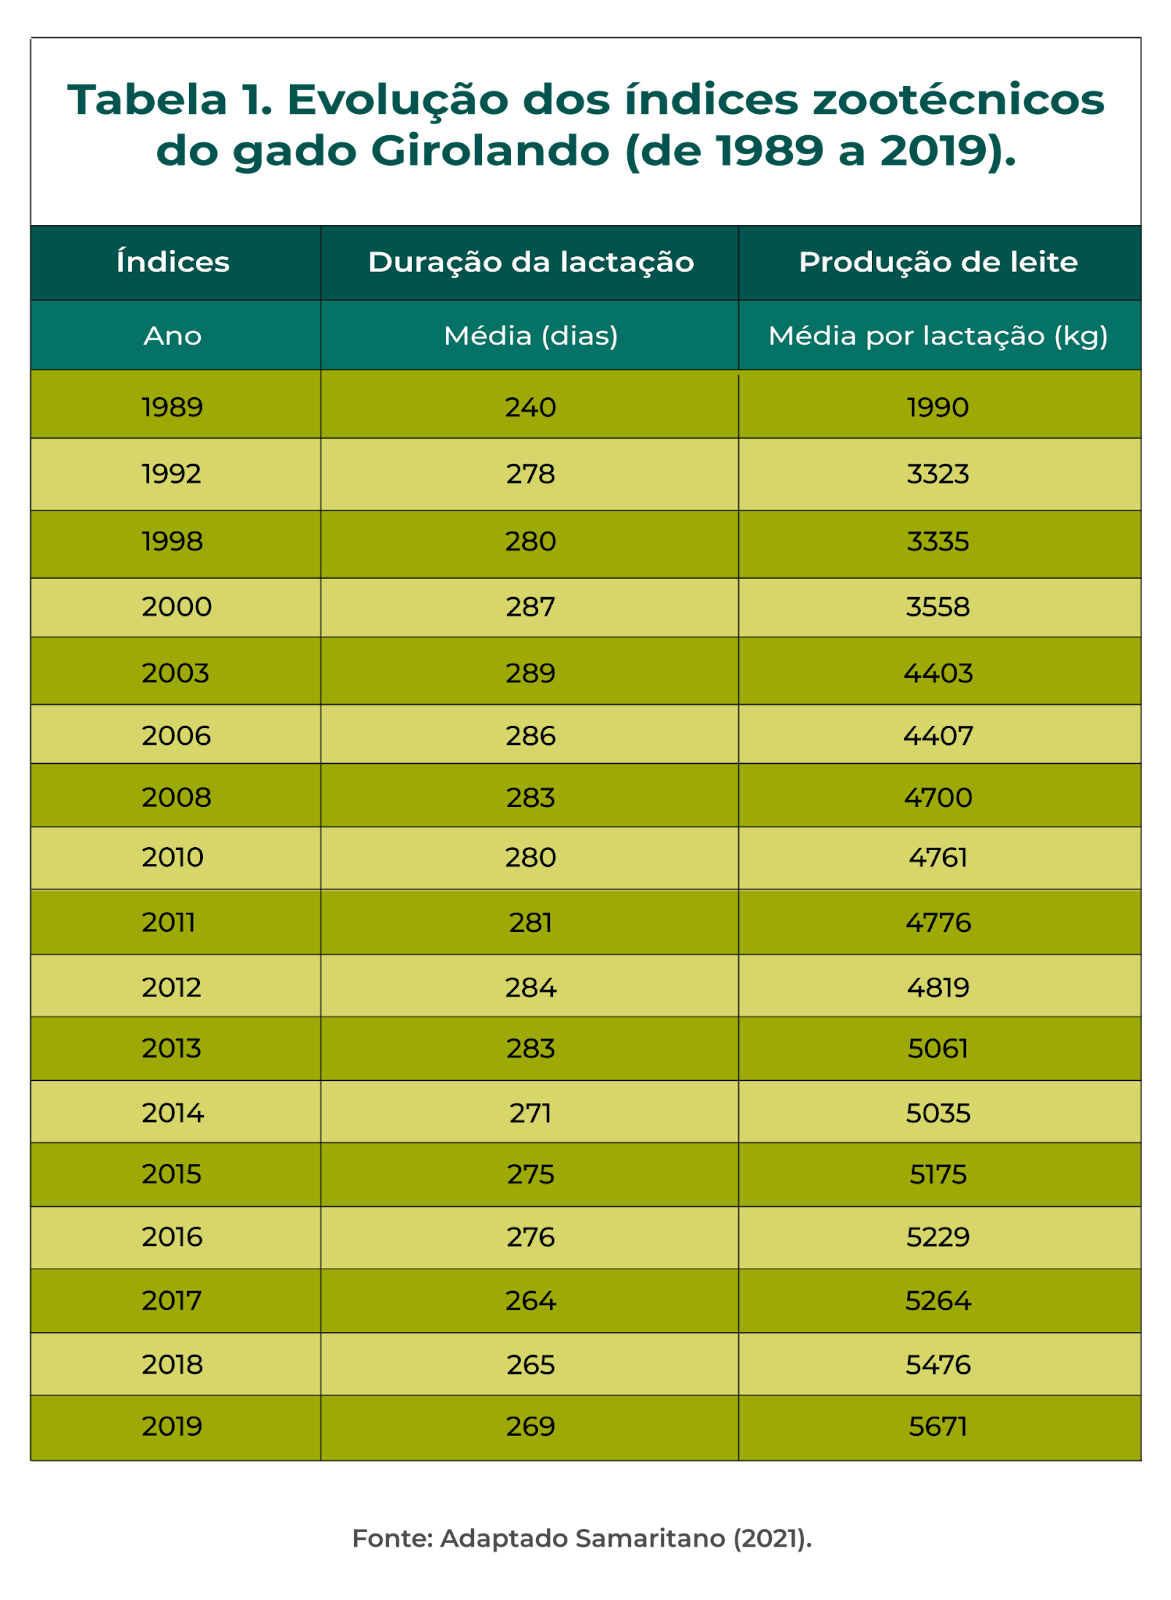 Tabela com índices zootécnicos do gado girolando desde 1989 até 2019.